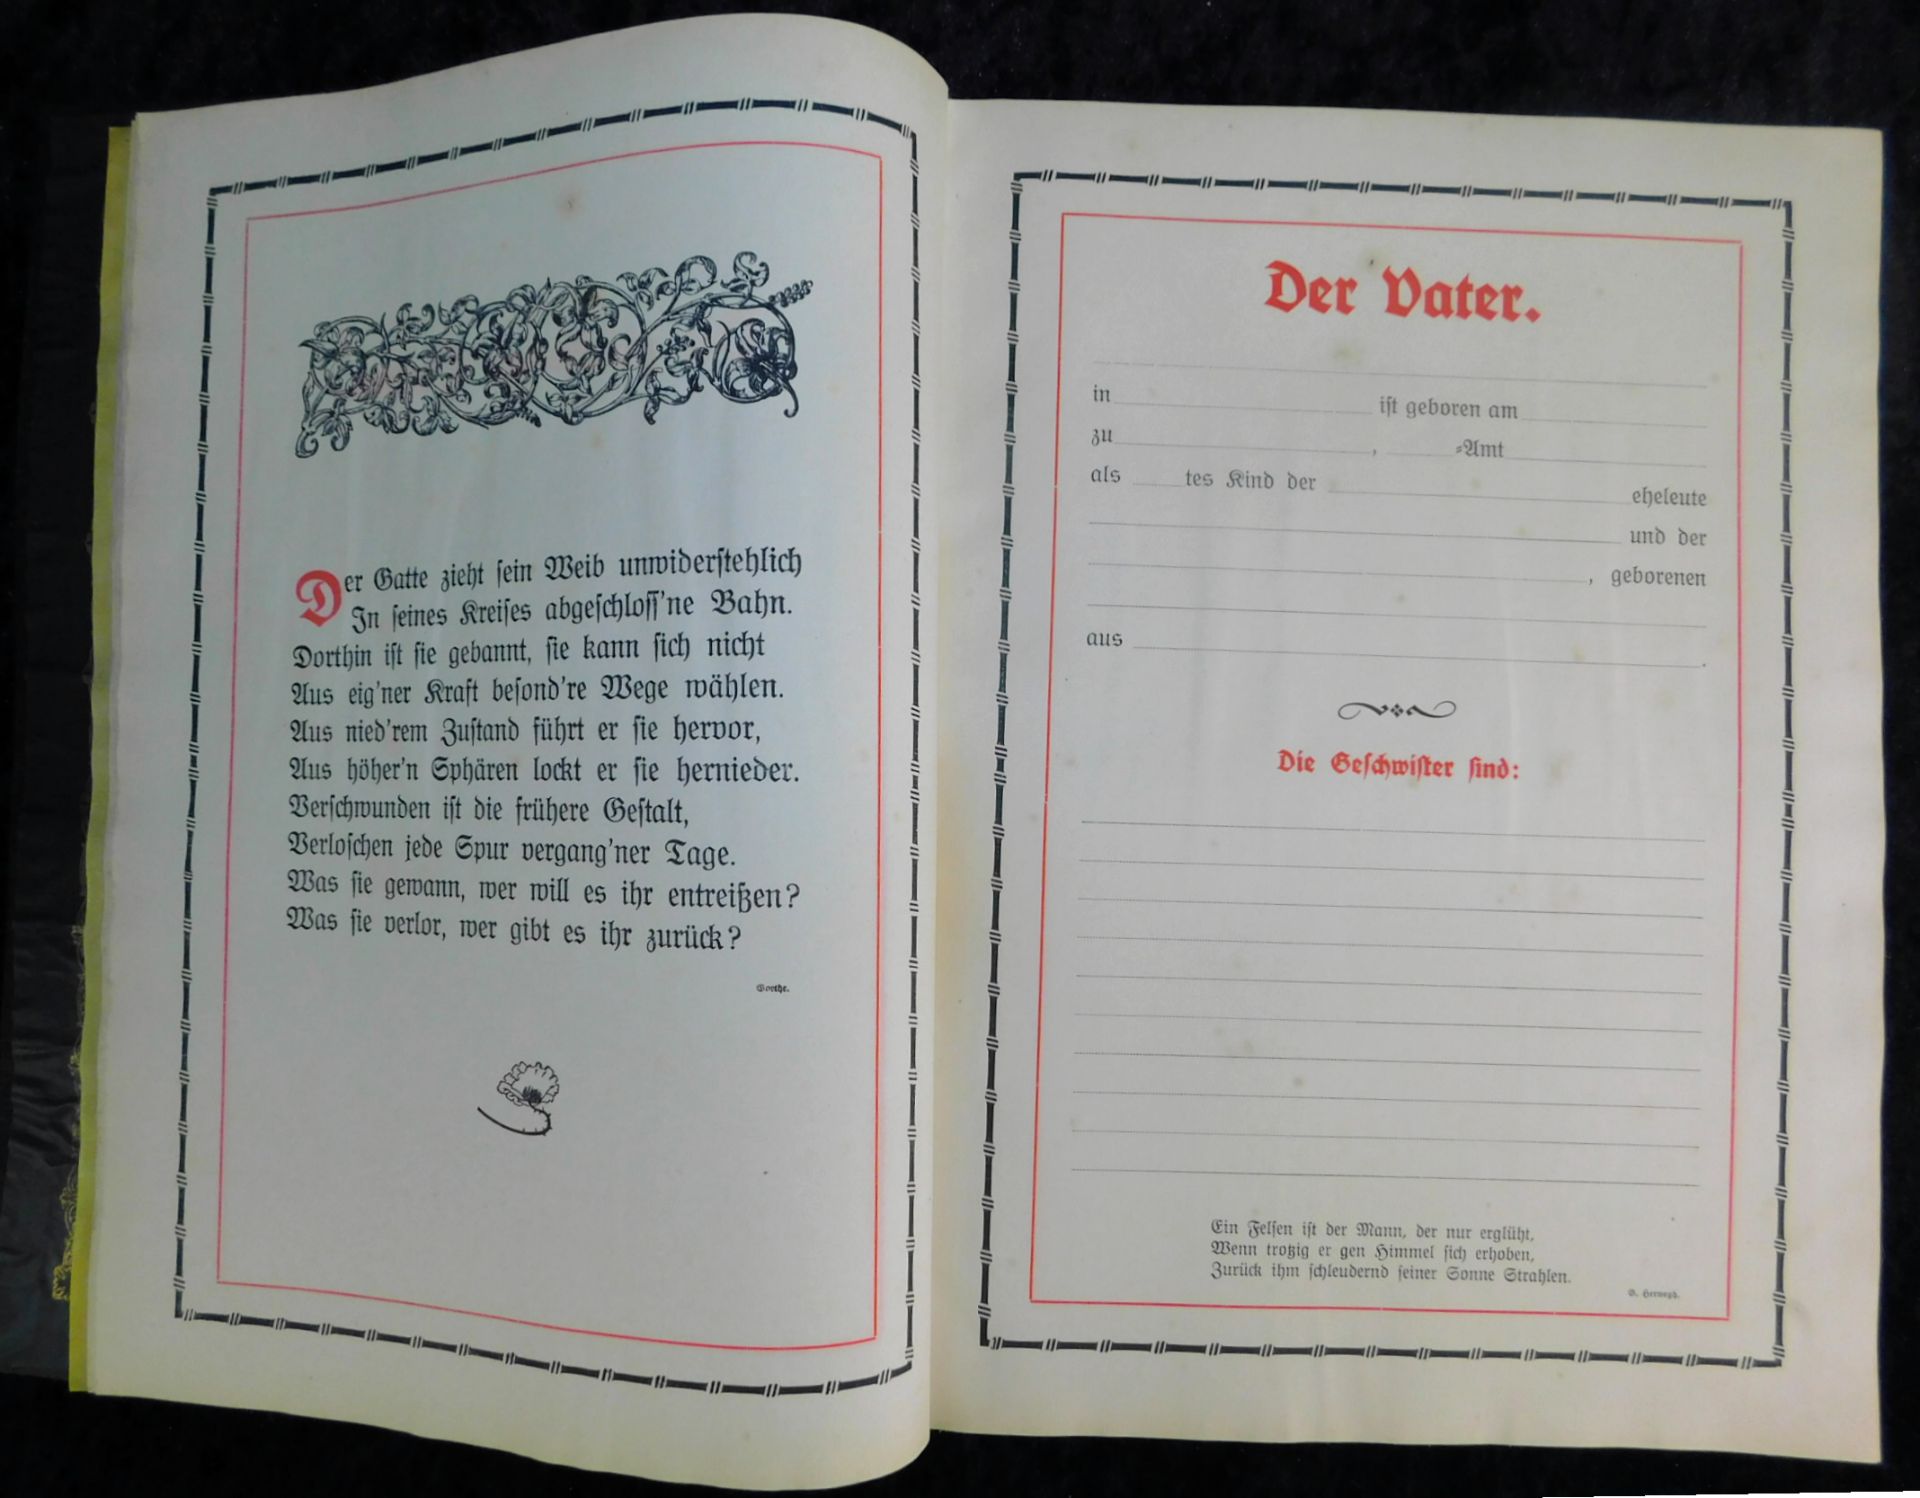 Großes Ehrenbuch 1914, Familienstammbuch, Verlag Joh.E.Hubens, Diessen/München - Image 5 of 7